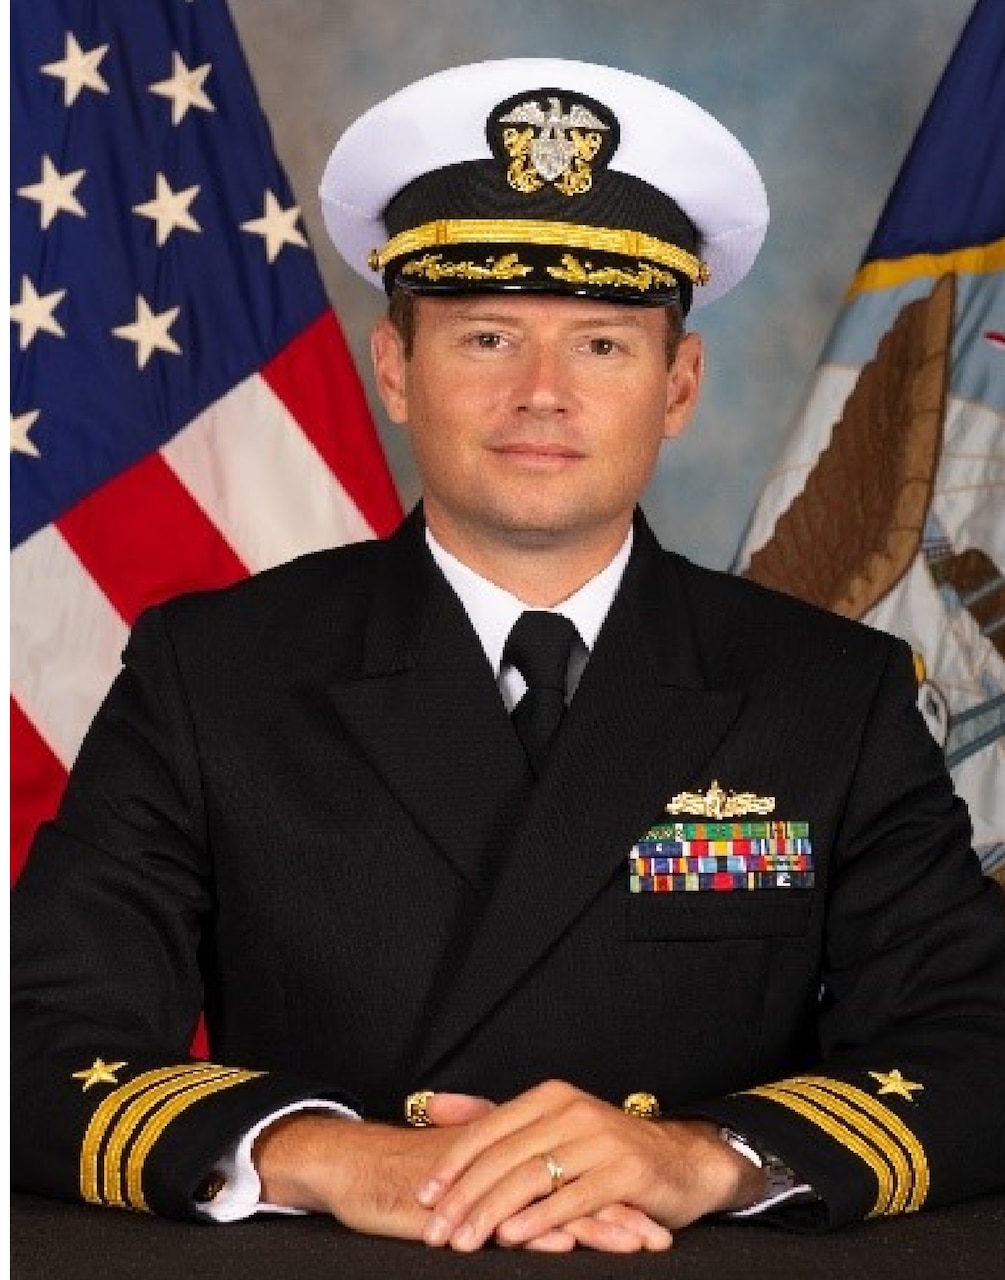 Commander Robert S. Schmidt